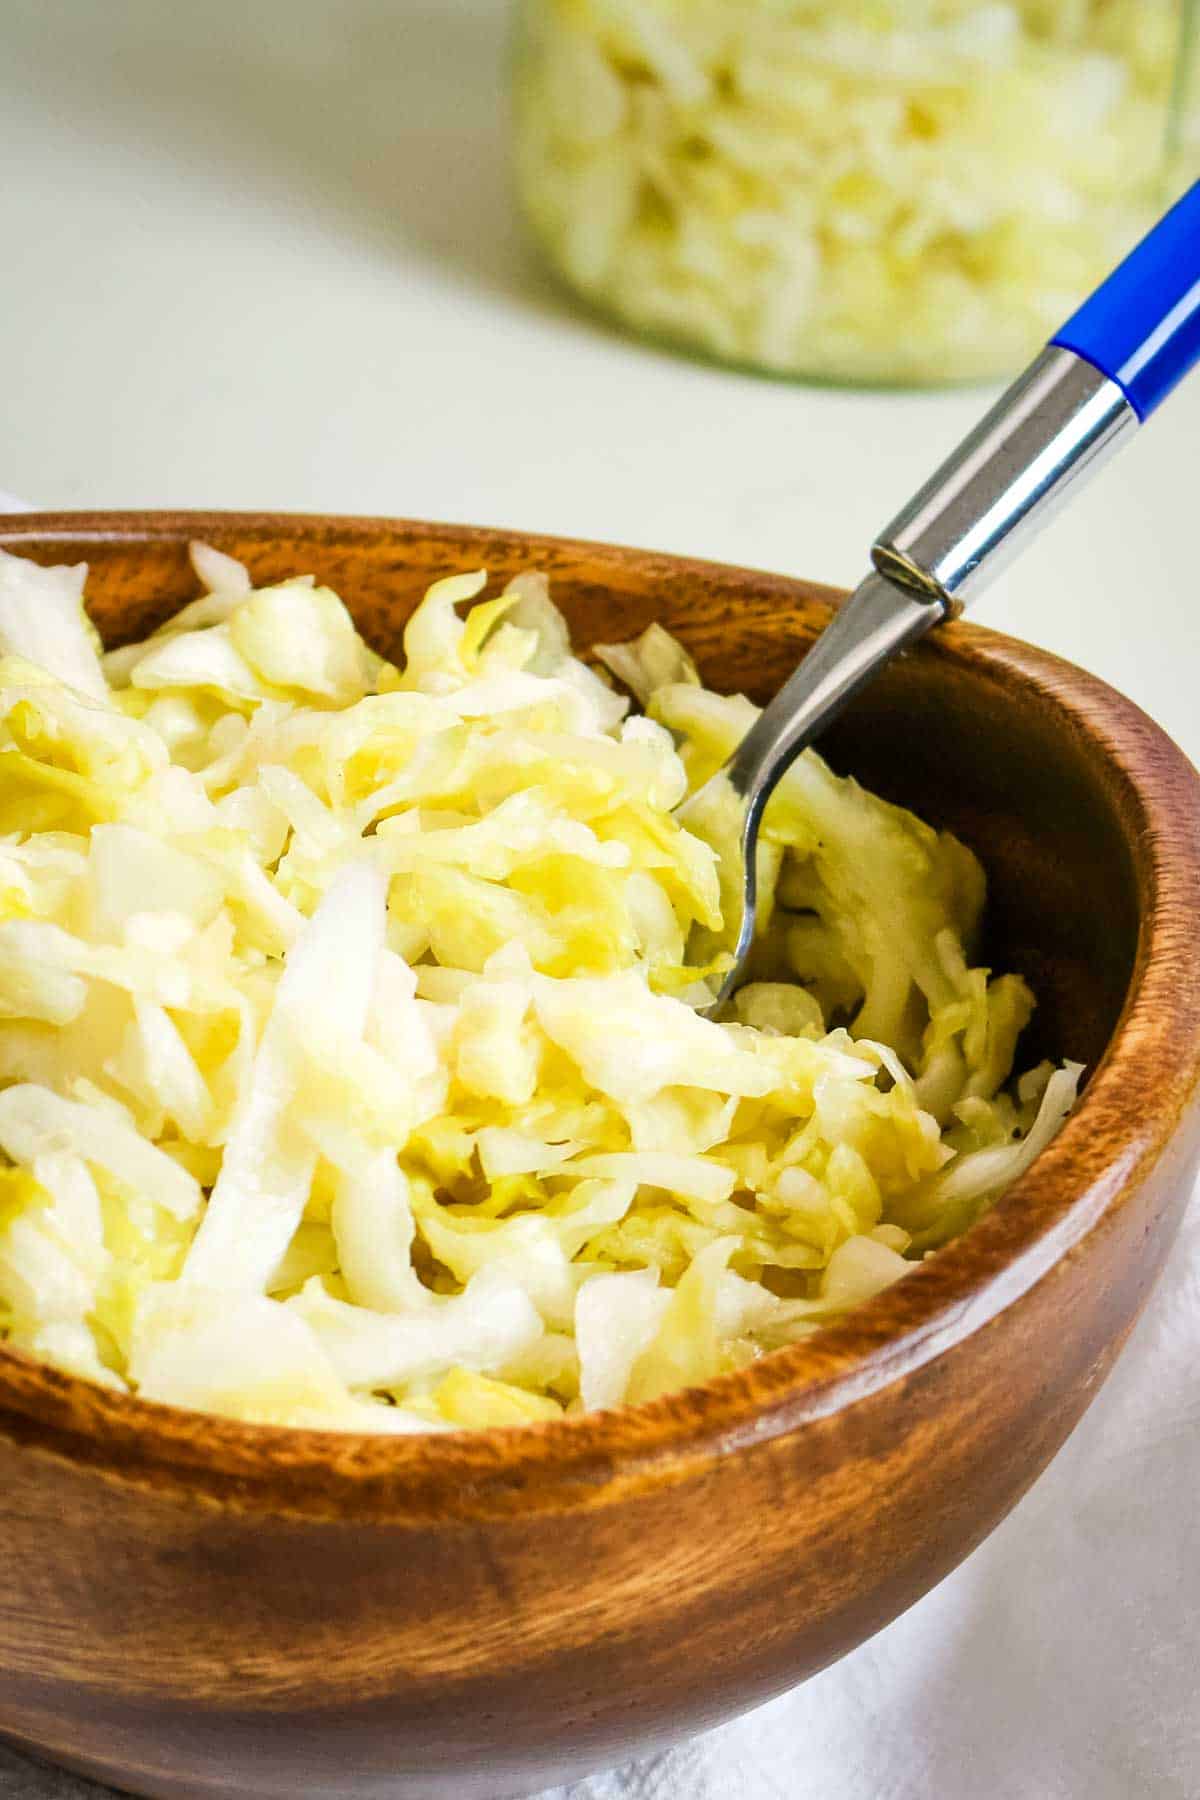 sauerkraut in wooden bowl with fork.